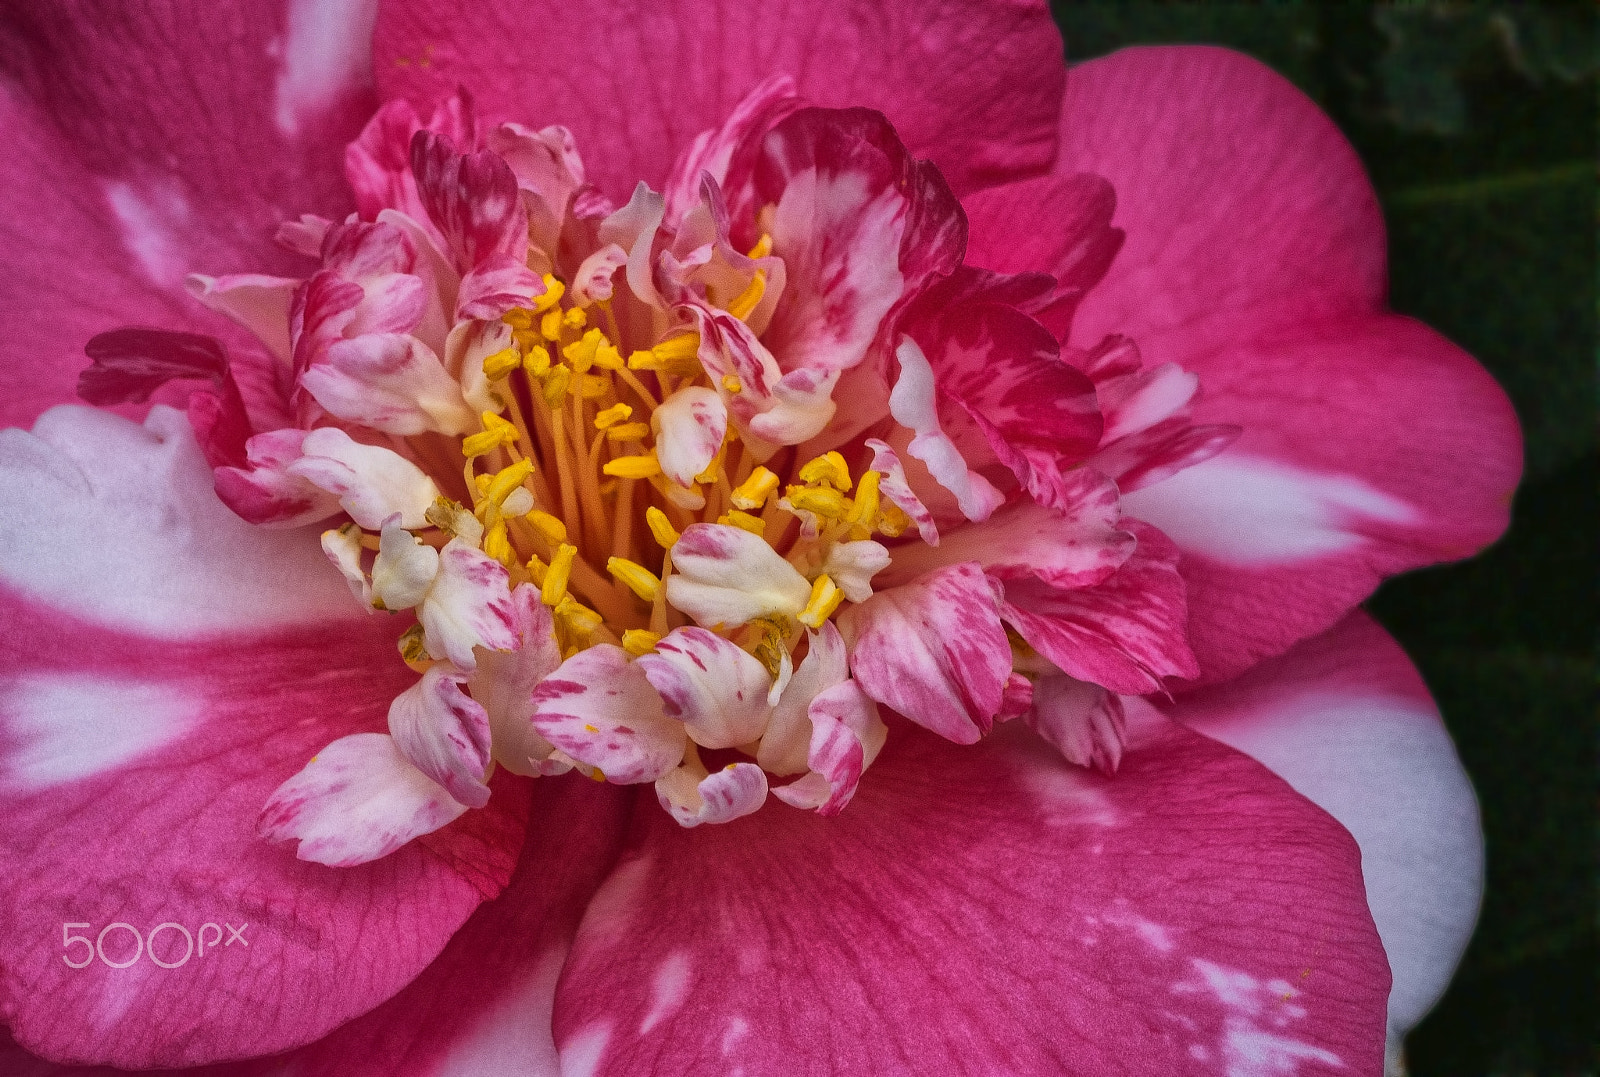 Nikon D800E + AF Micro-Nikkor 55mm f/2.8 sample photo. Ebruli kamelya (camellia marbled)... photography